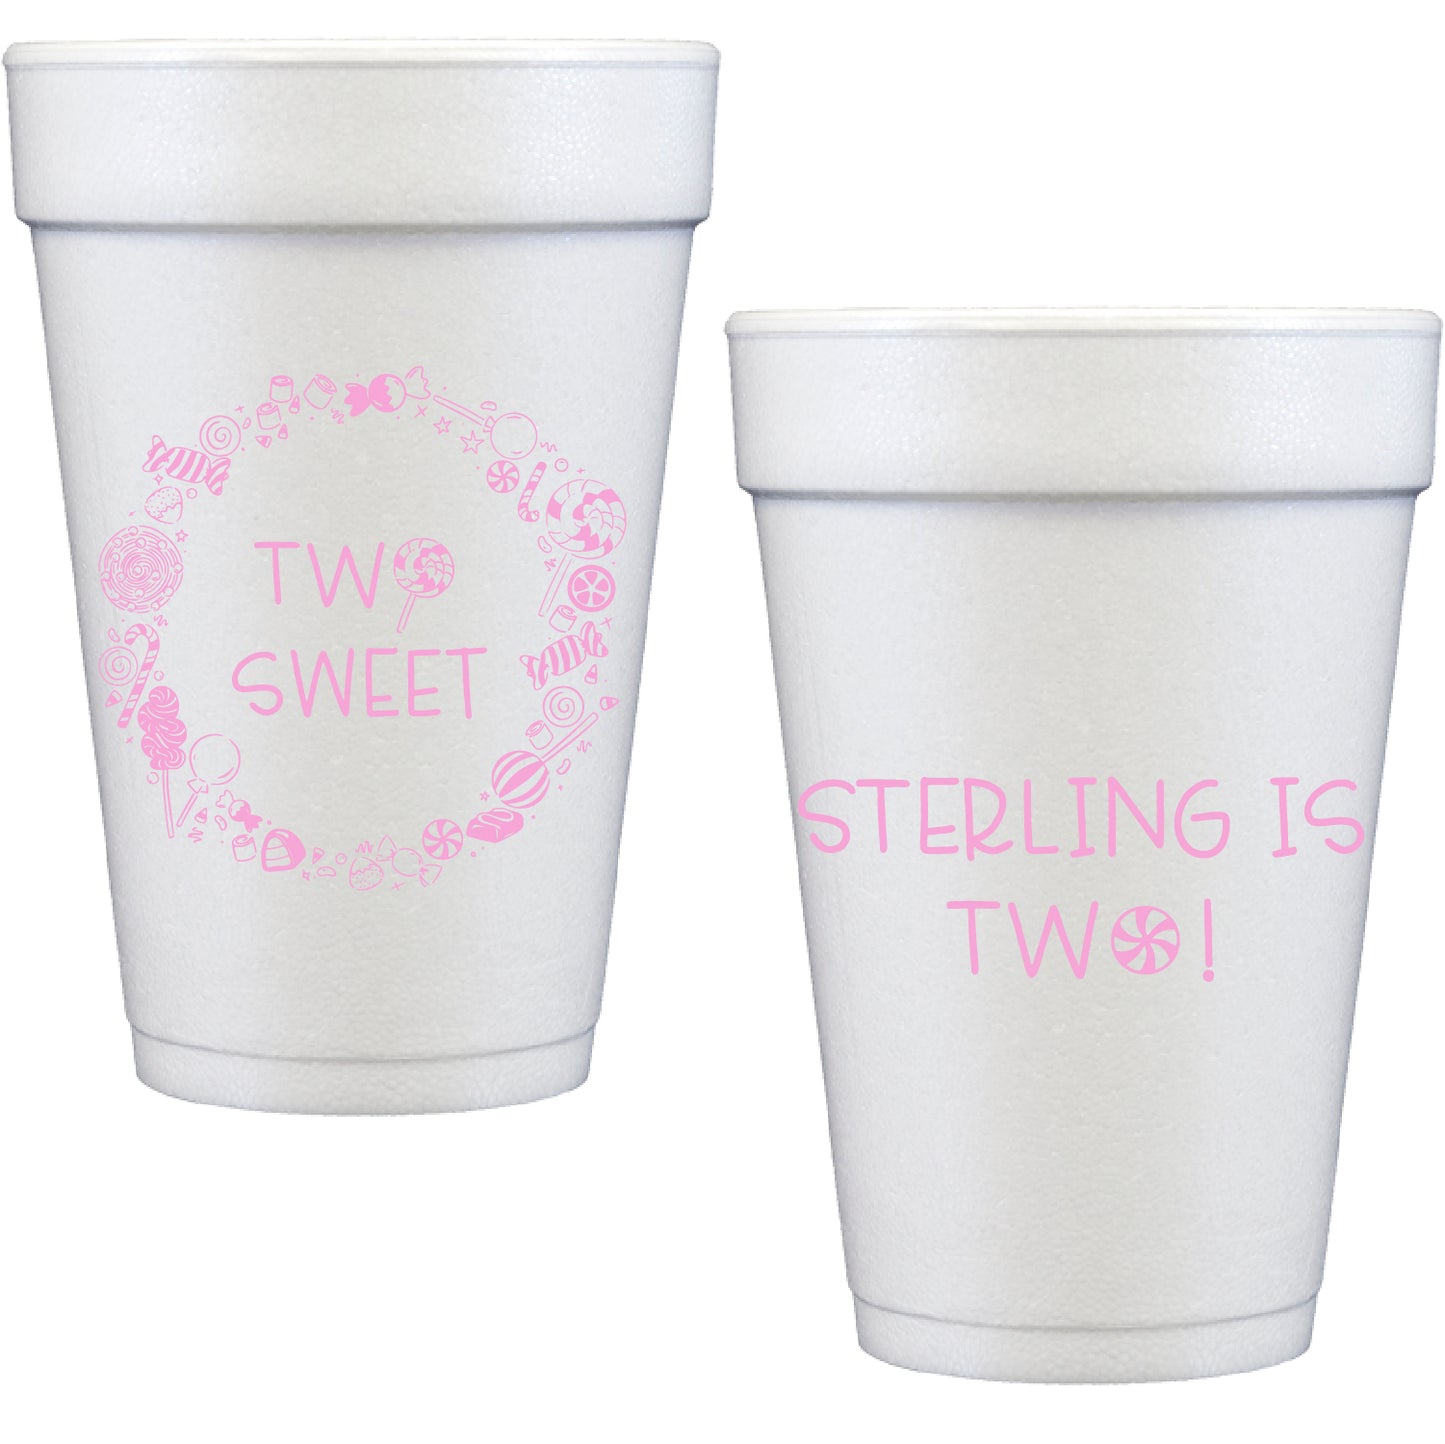 sweet | styrofoam cups